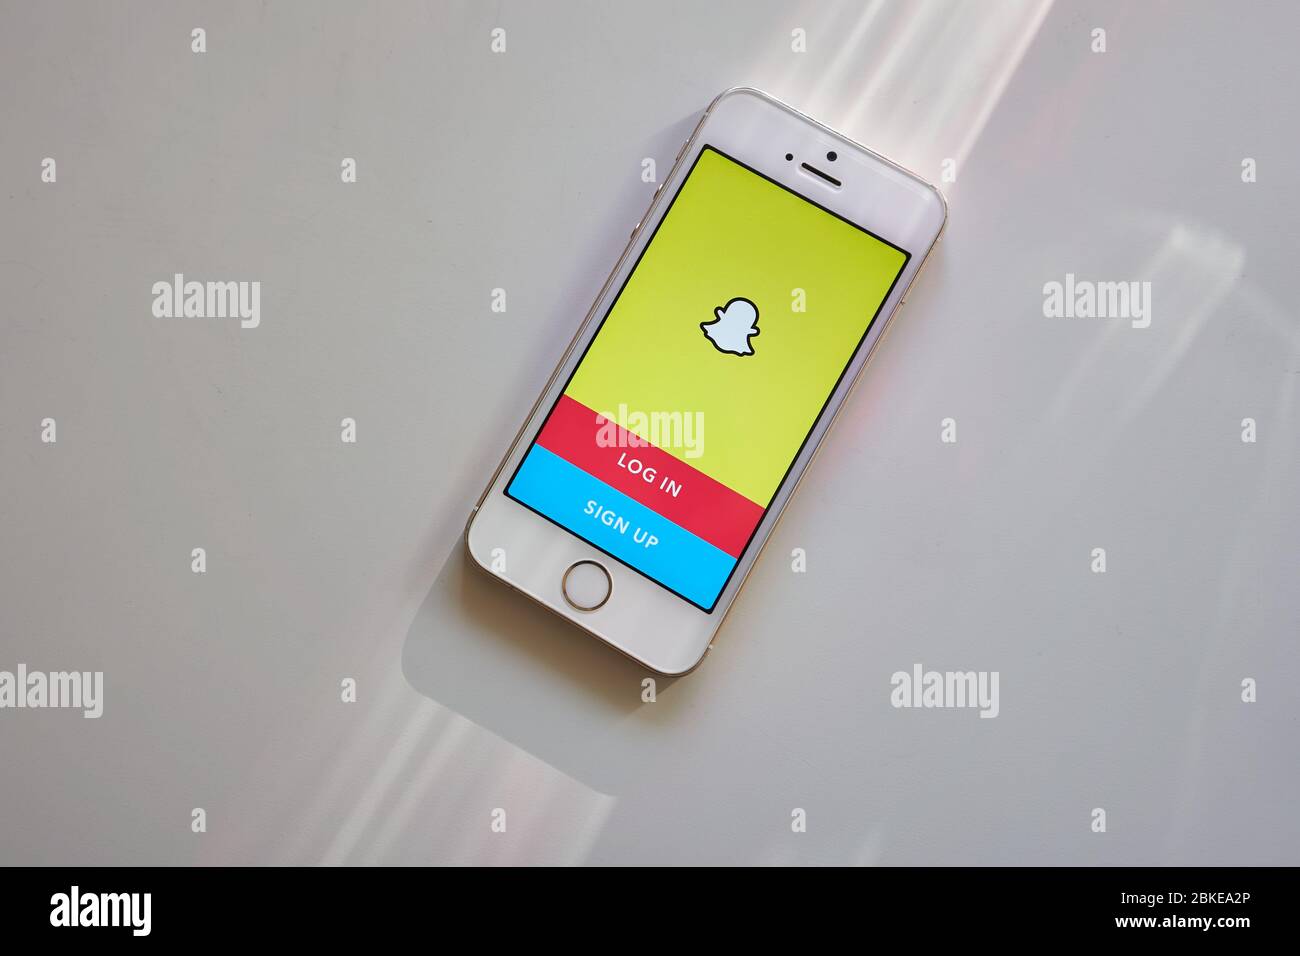 La page de connexion à l'application mobile Snapchat s'affiche sur un smartphone. Snapchat est une application de messagerie multimédia utilisée dans le monde entier, développée par Snap Inc Banque D'Images